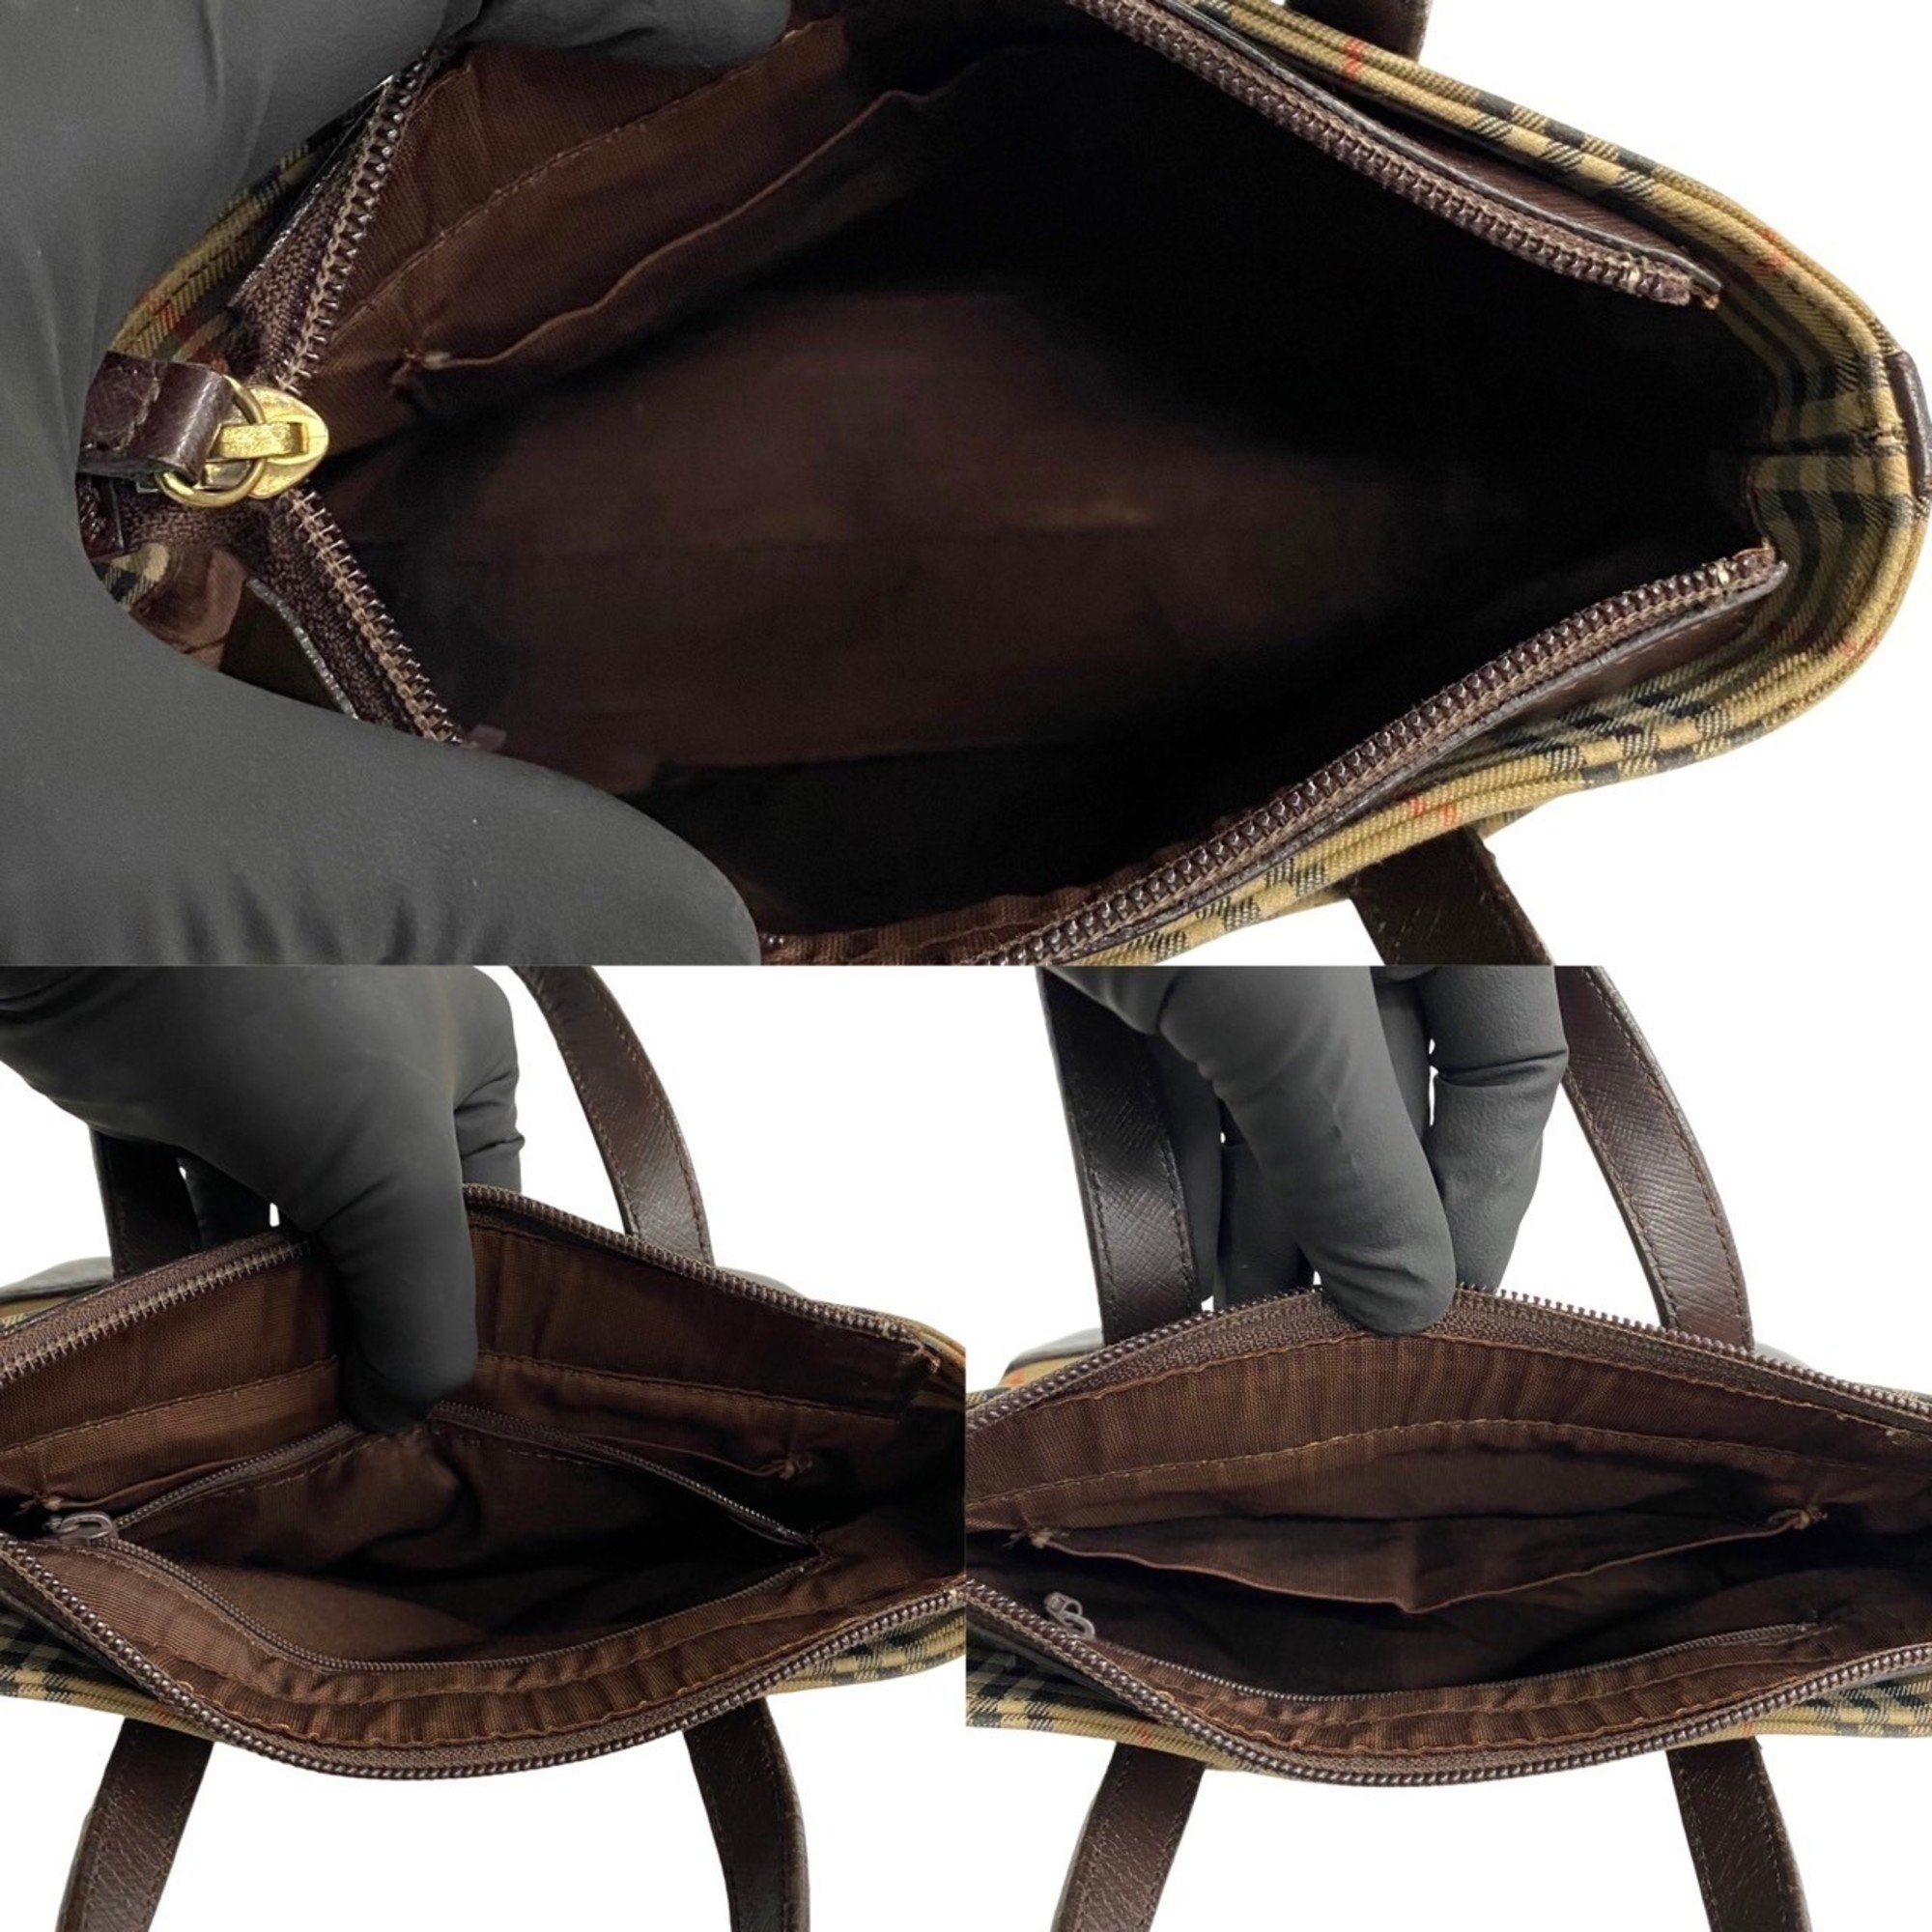 BURBERRY Nova Check Canvas Leather Handbag Tote Bag Brown 17750